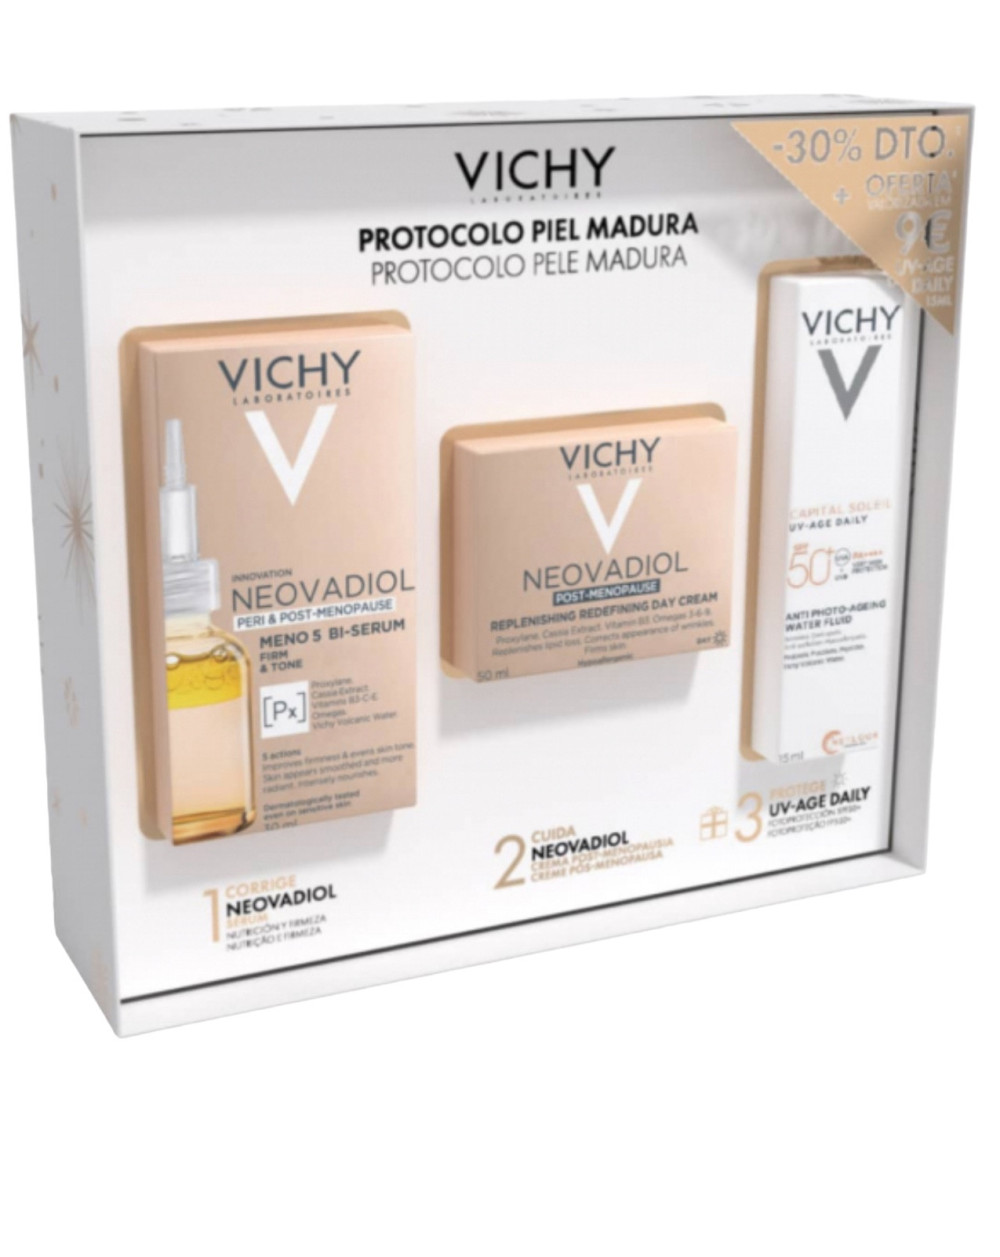 Vichy  cofre Neovadiol Density   piel madura